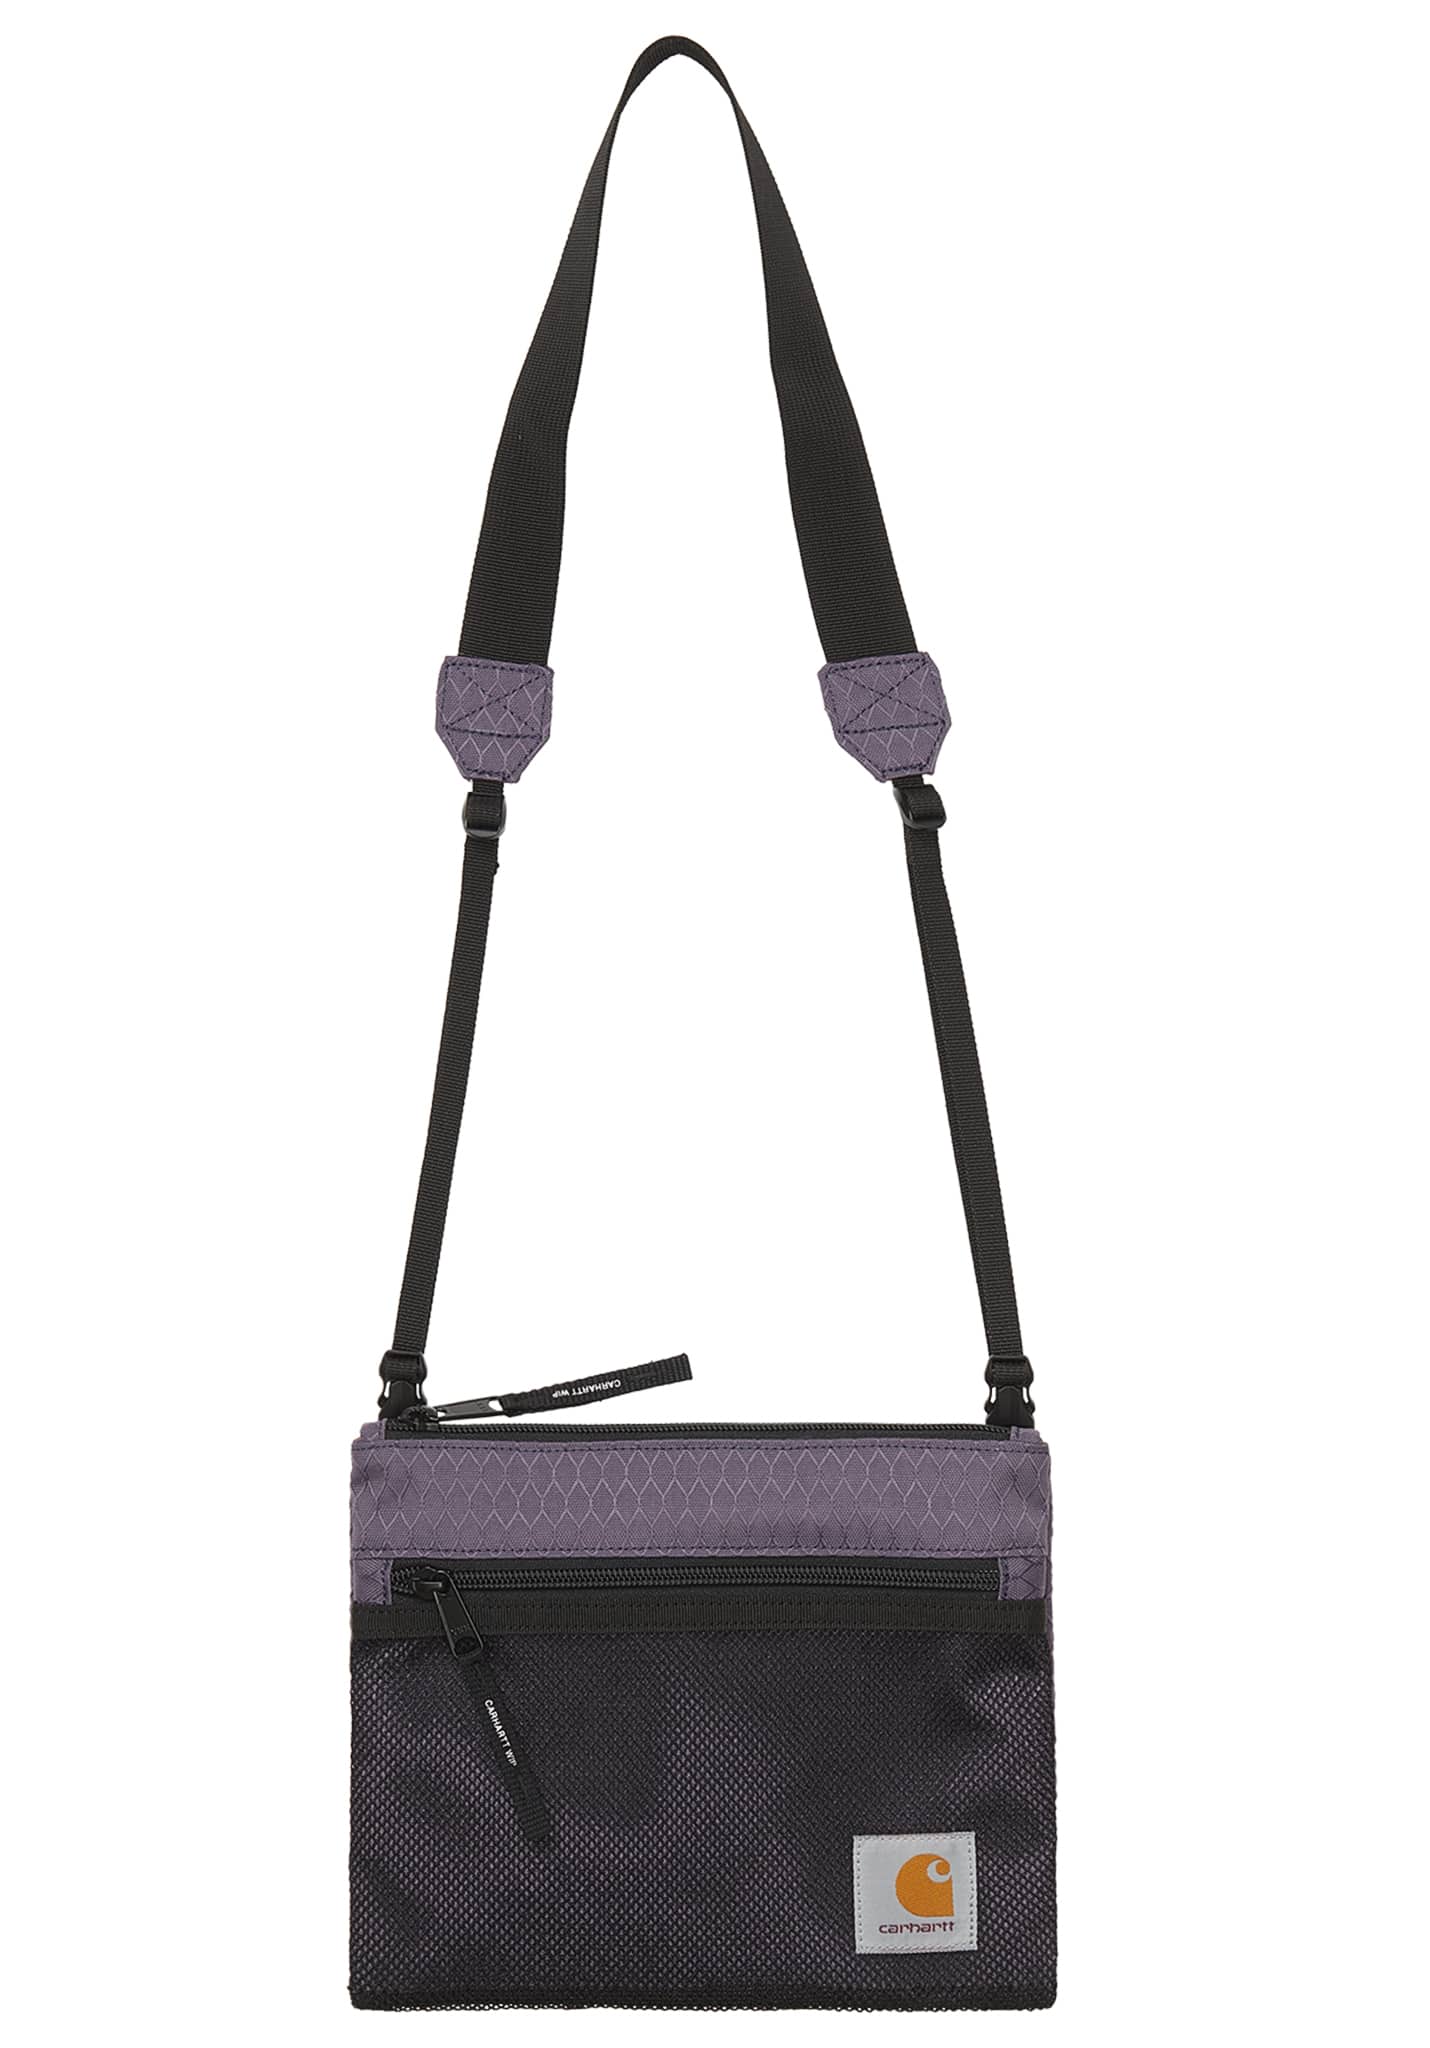 Carhartt WIP Spey Strap Tasche provence / schwarz One Size